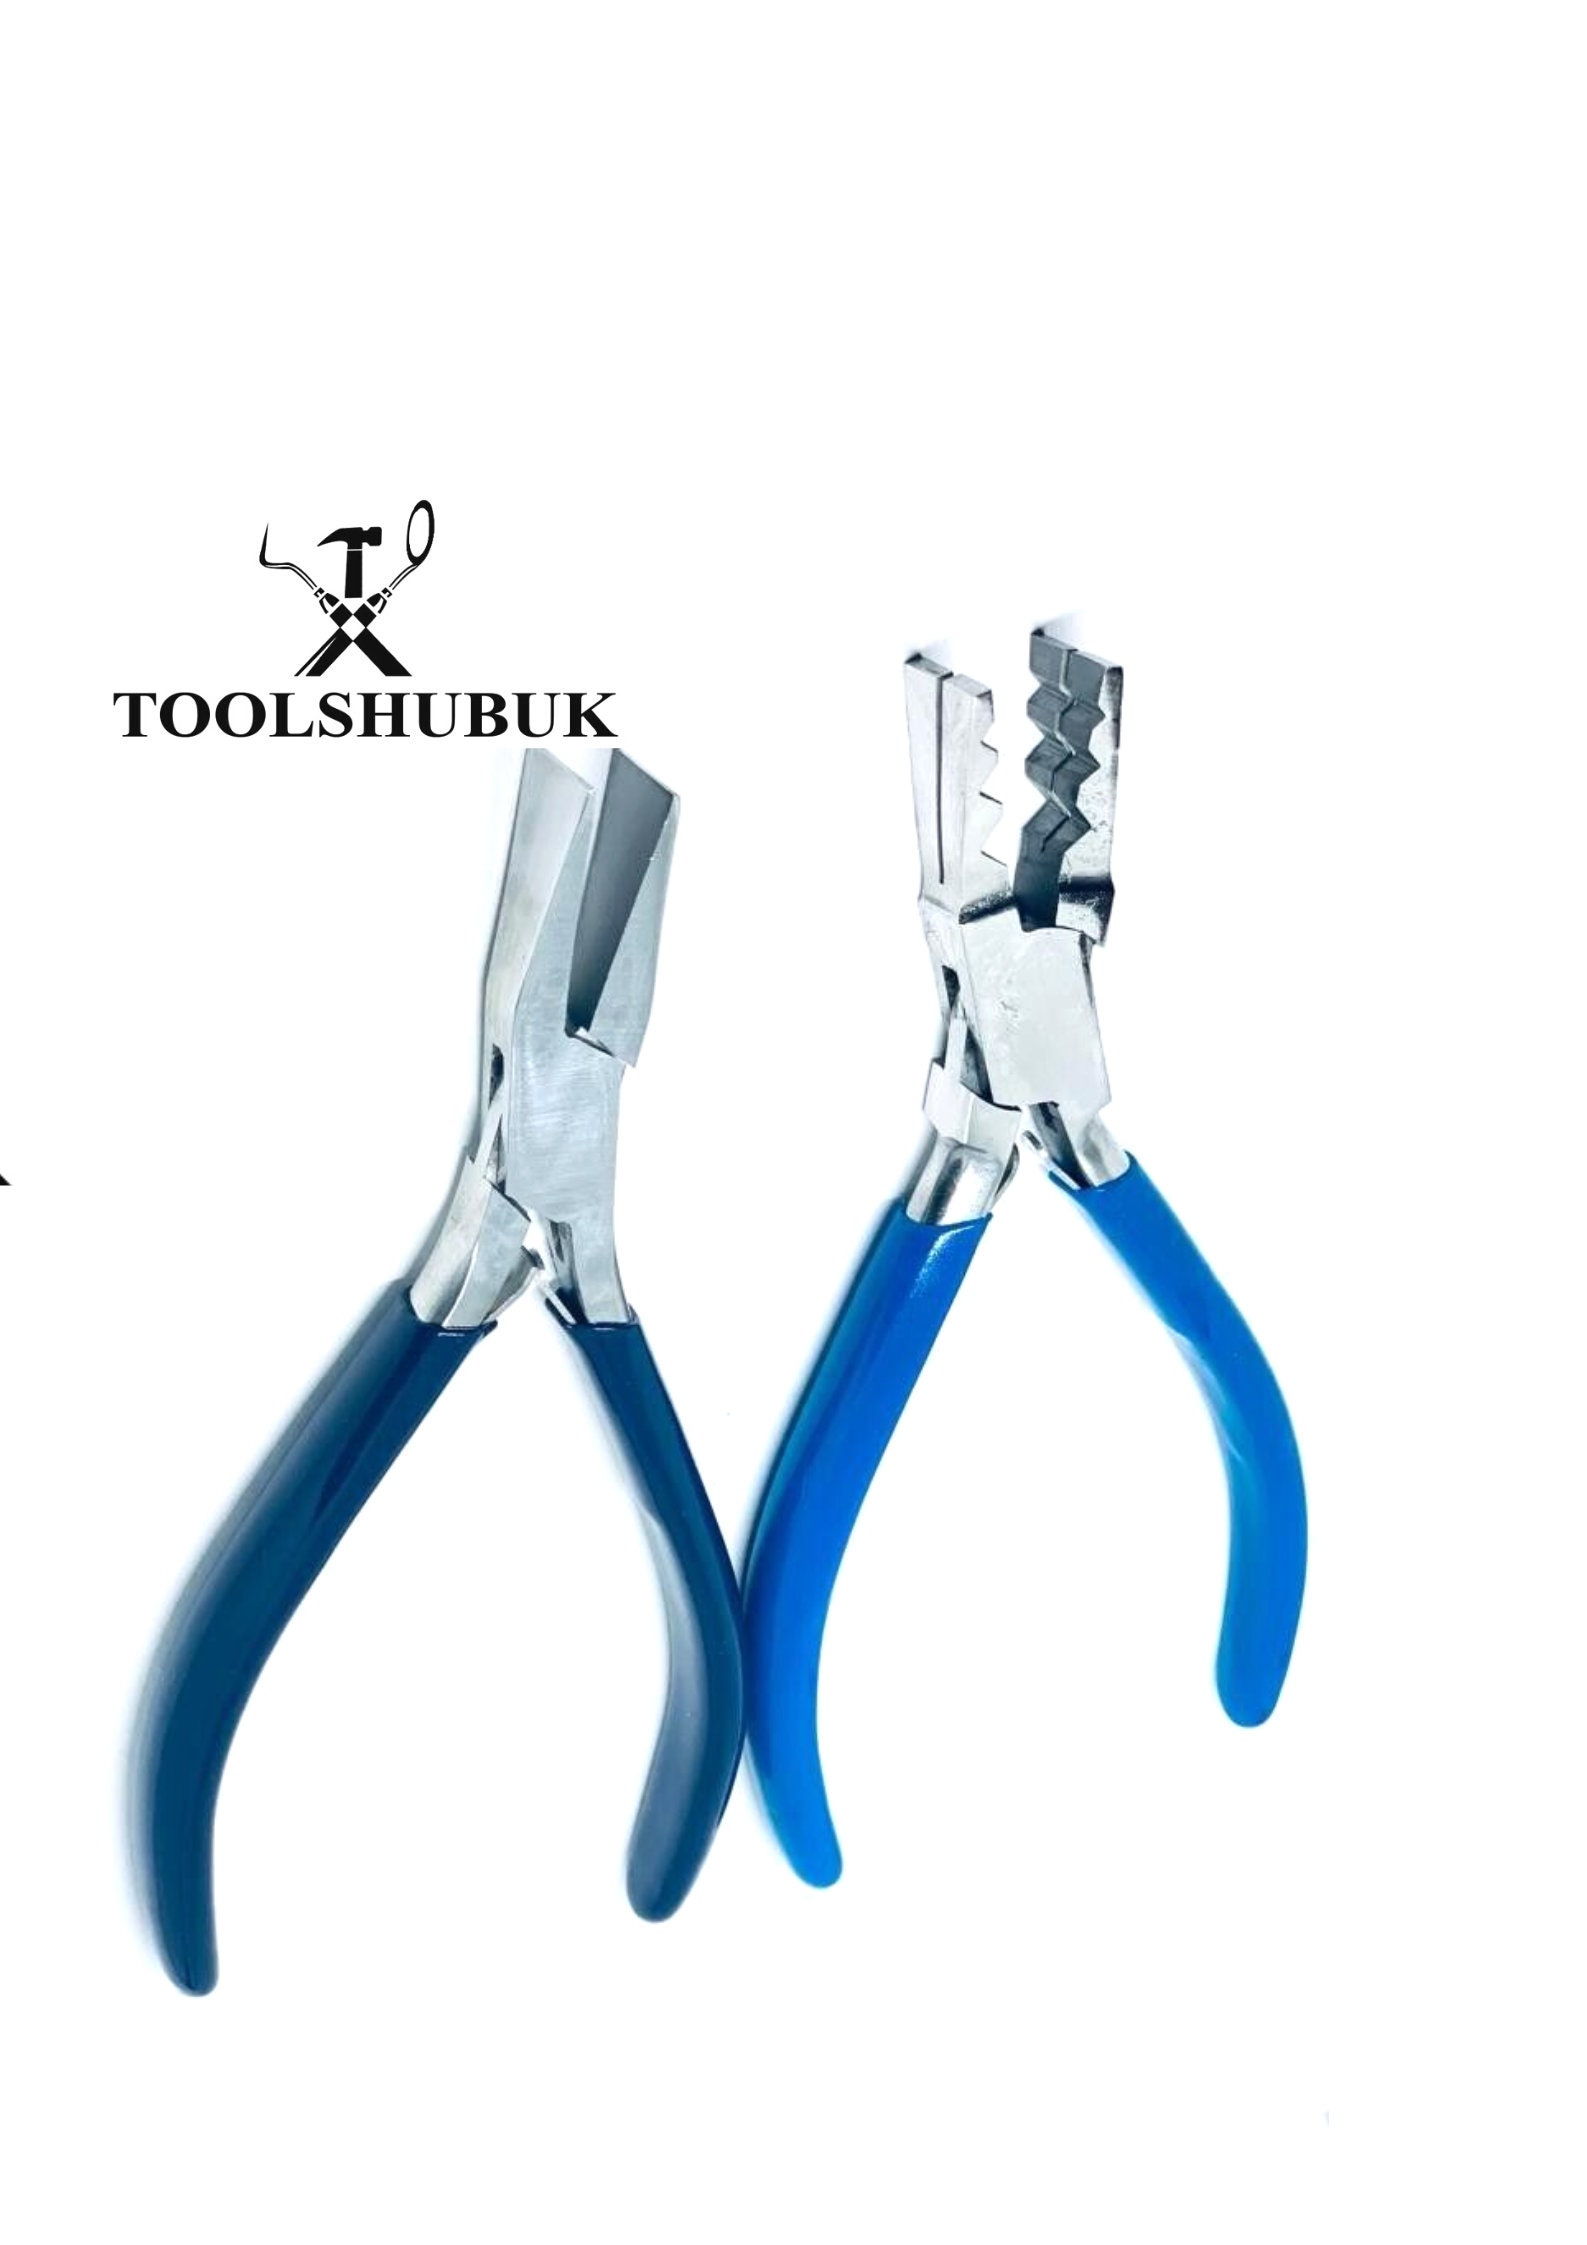 Pliers - Xuron® Tweezer Bent Nose 1.3mm Wide (450BN) - Blue or Black Handles